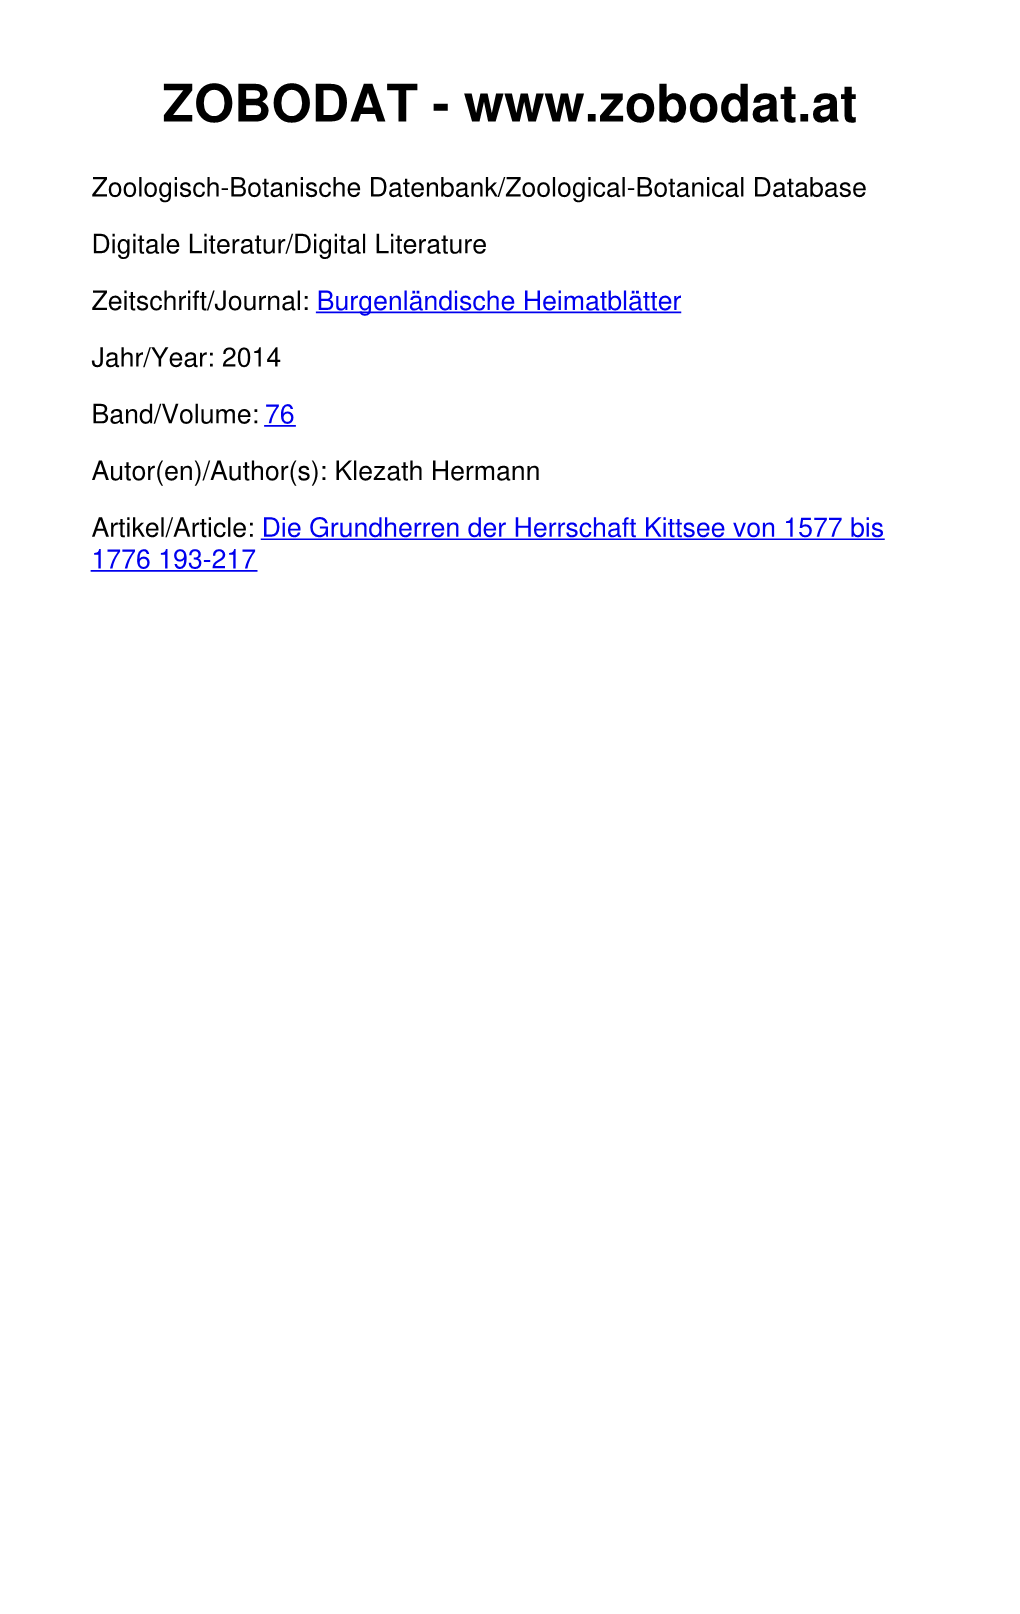 Die Grundherren Der Herrschaft Kittsee Von 1577 Bis 1776 193-217 ©Amt Der Burgenländischen Landesregierung, Landesarchiv, Download Unter